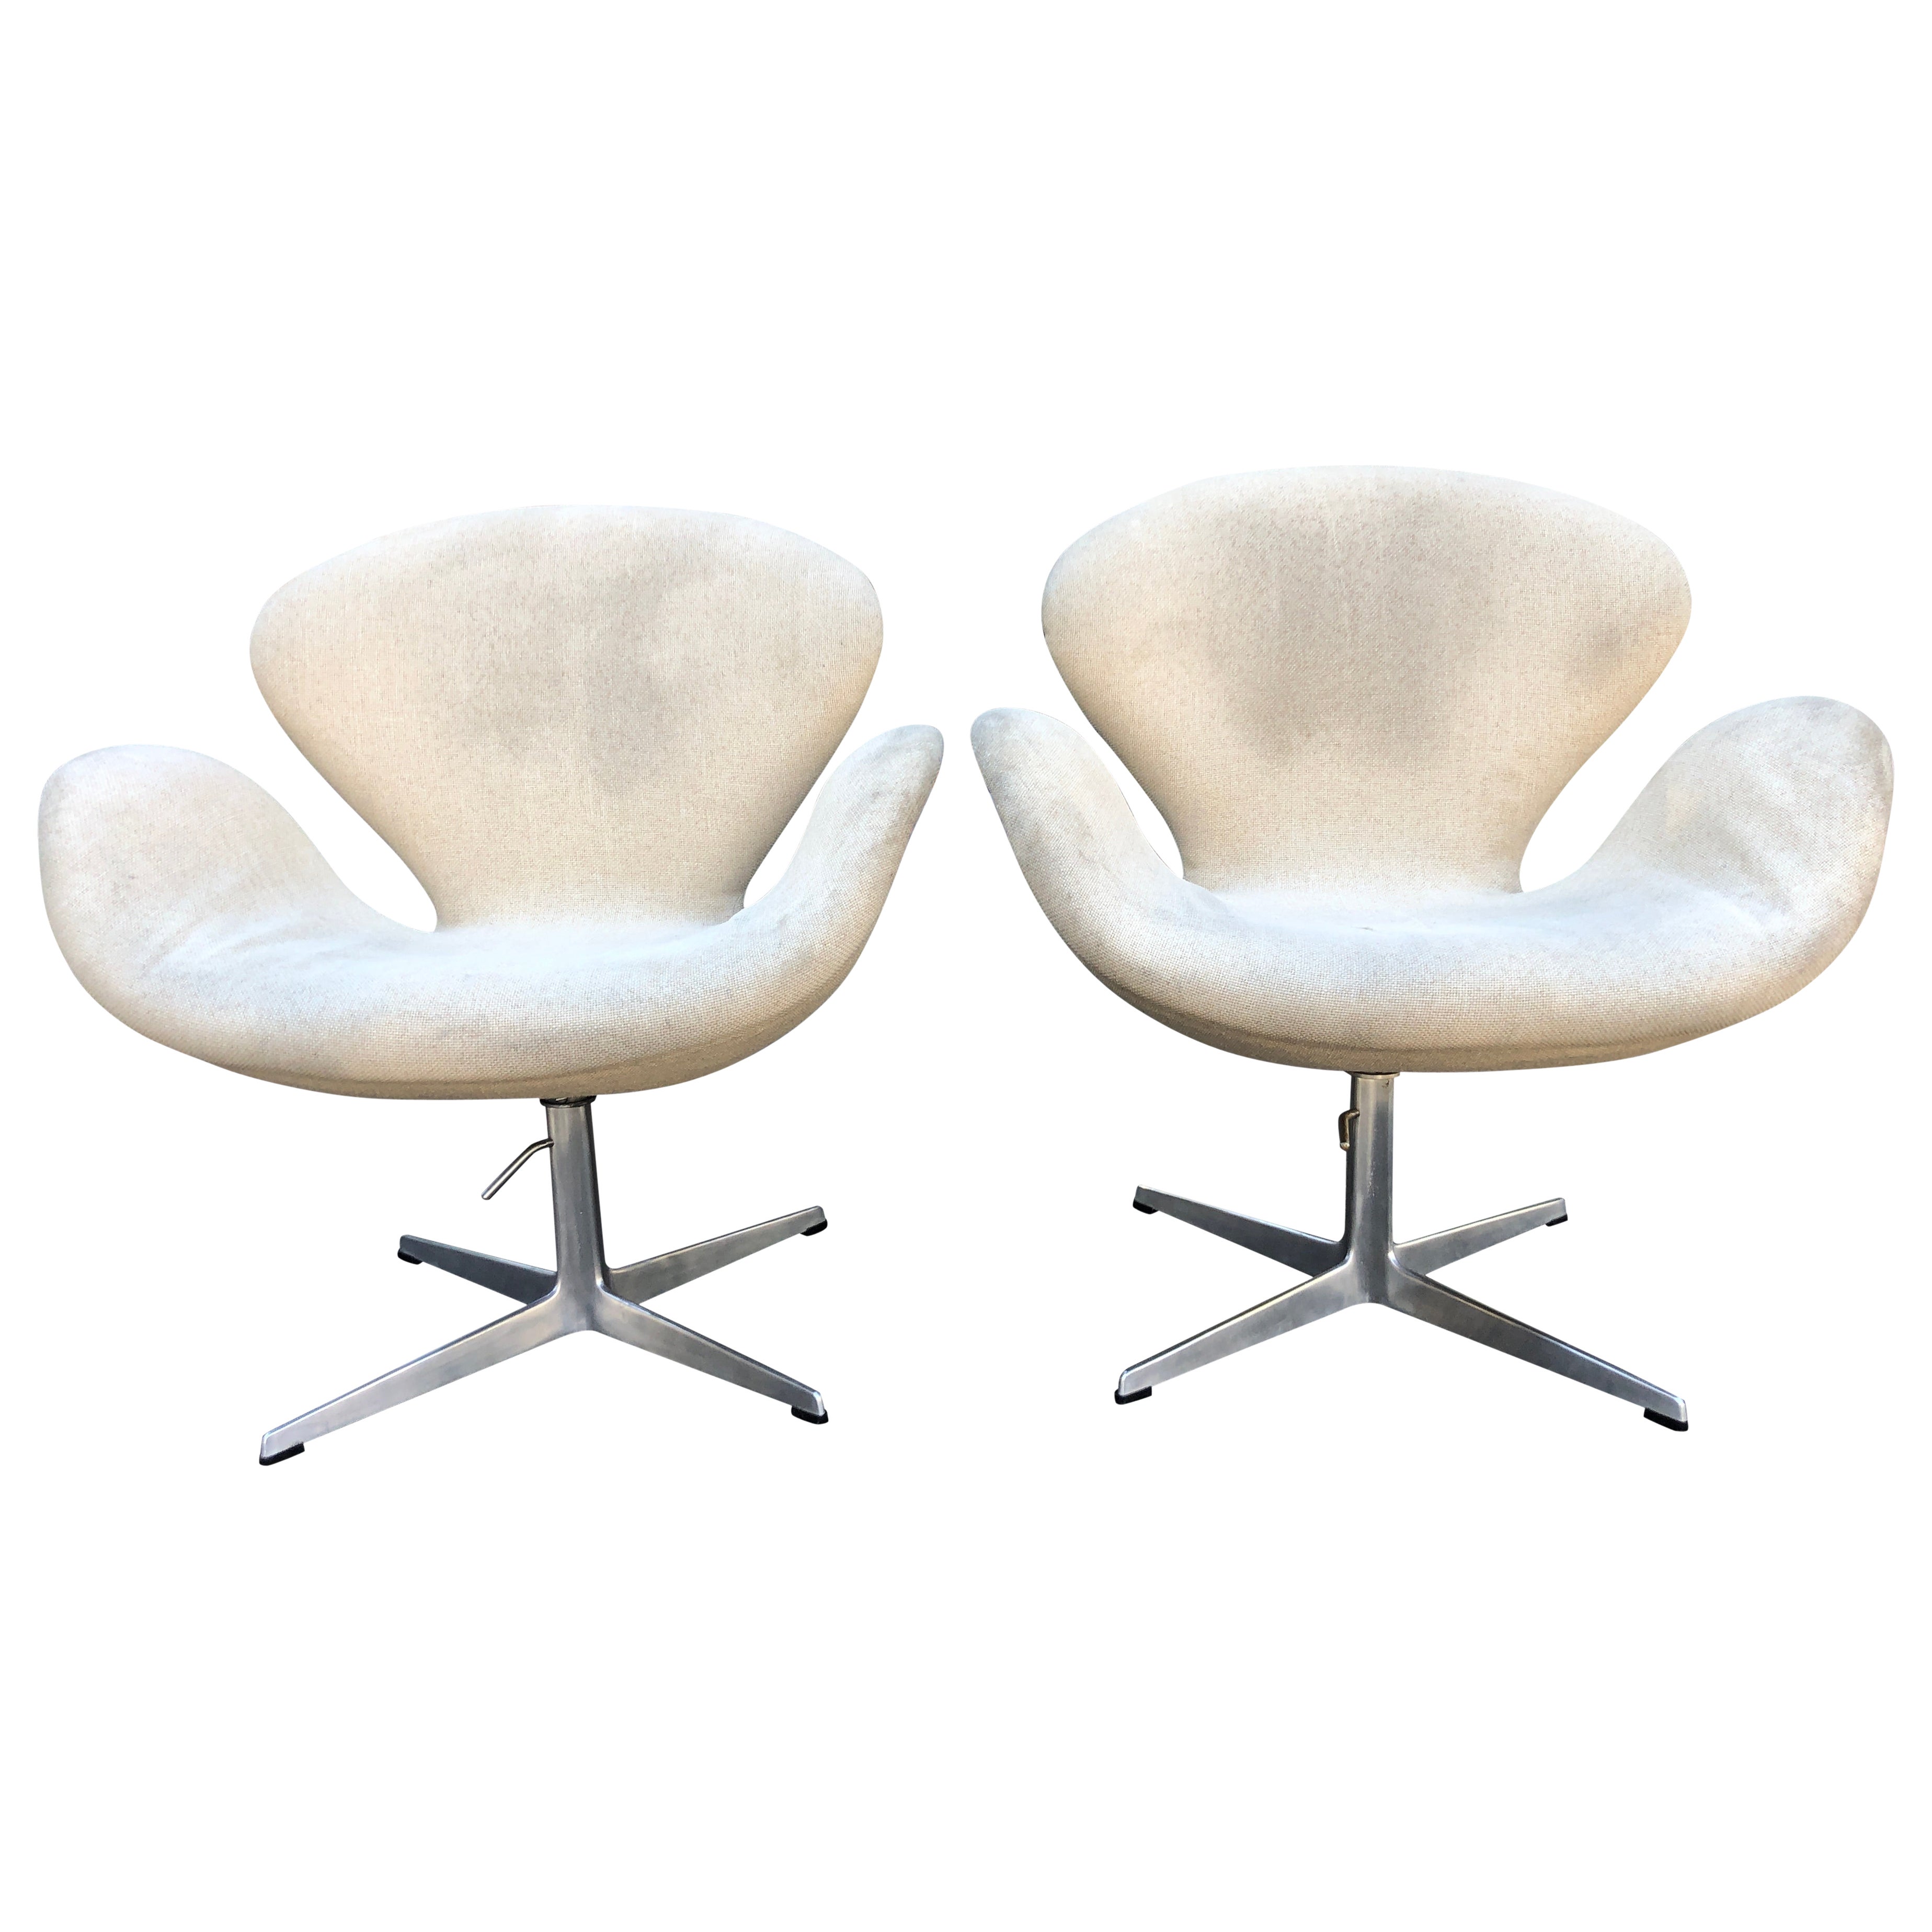 Schönes Paar Swan Chairs von Arne Jacobsen für Fritz Hansen, 1960er Jahre